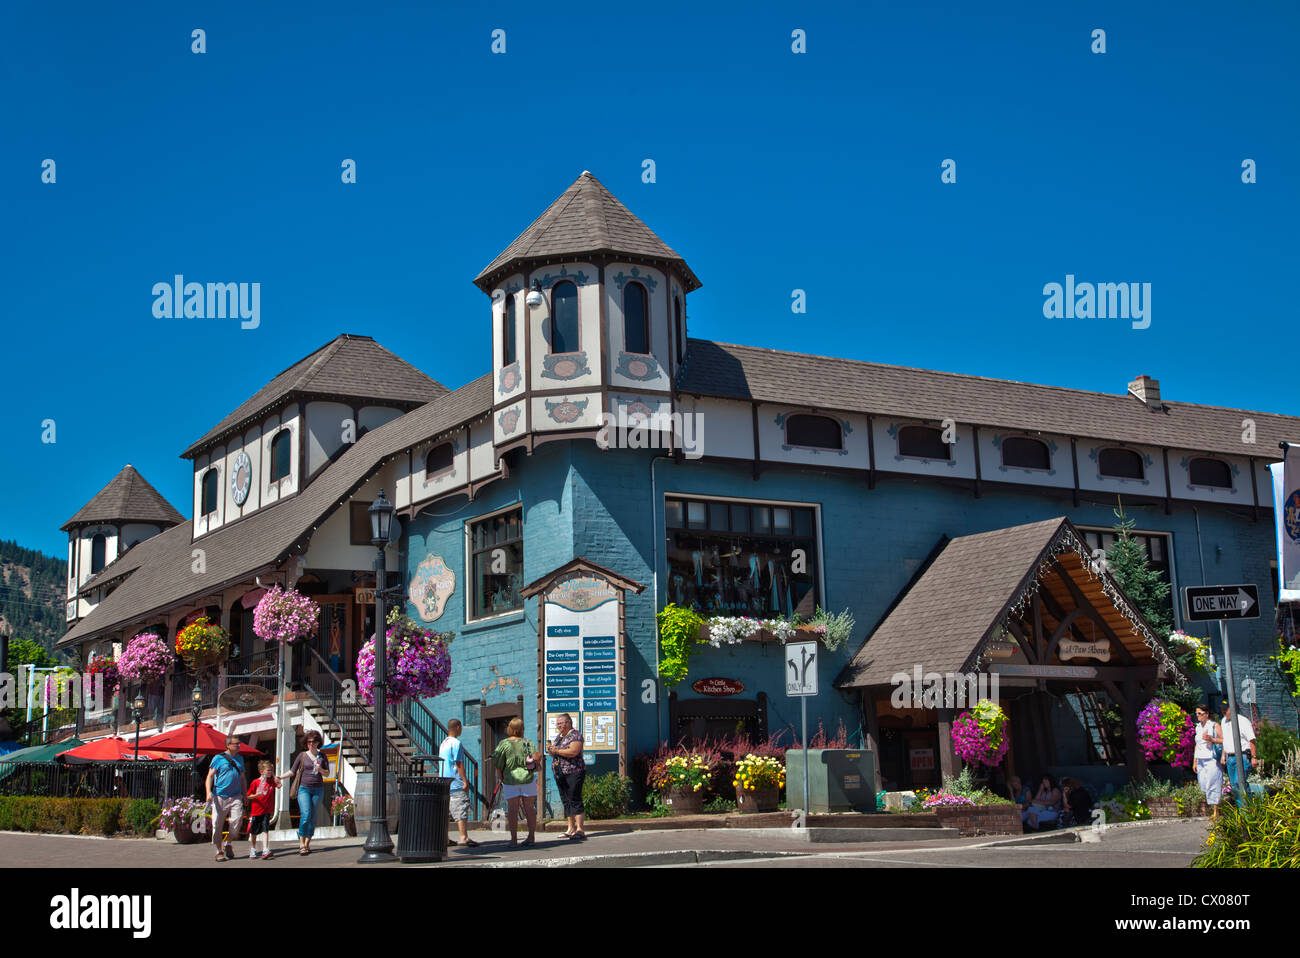 Visión general de la arquitectura bávara en Leavenworth, Washington, EE.UU. Foto de stock